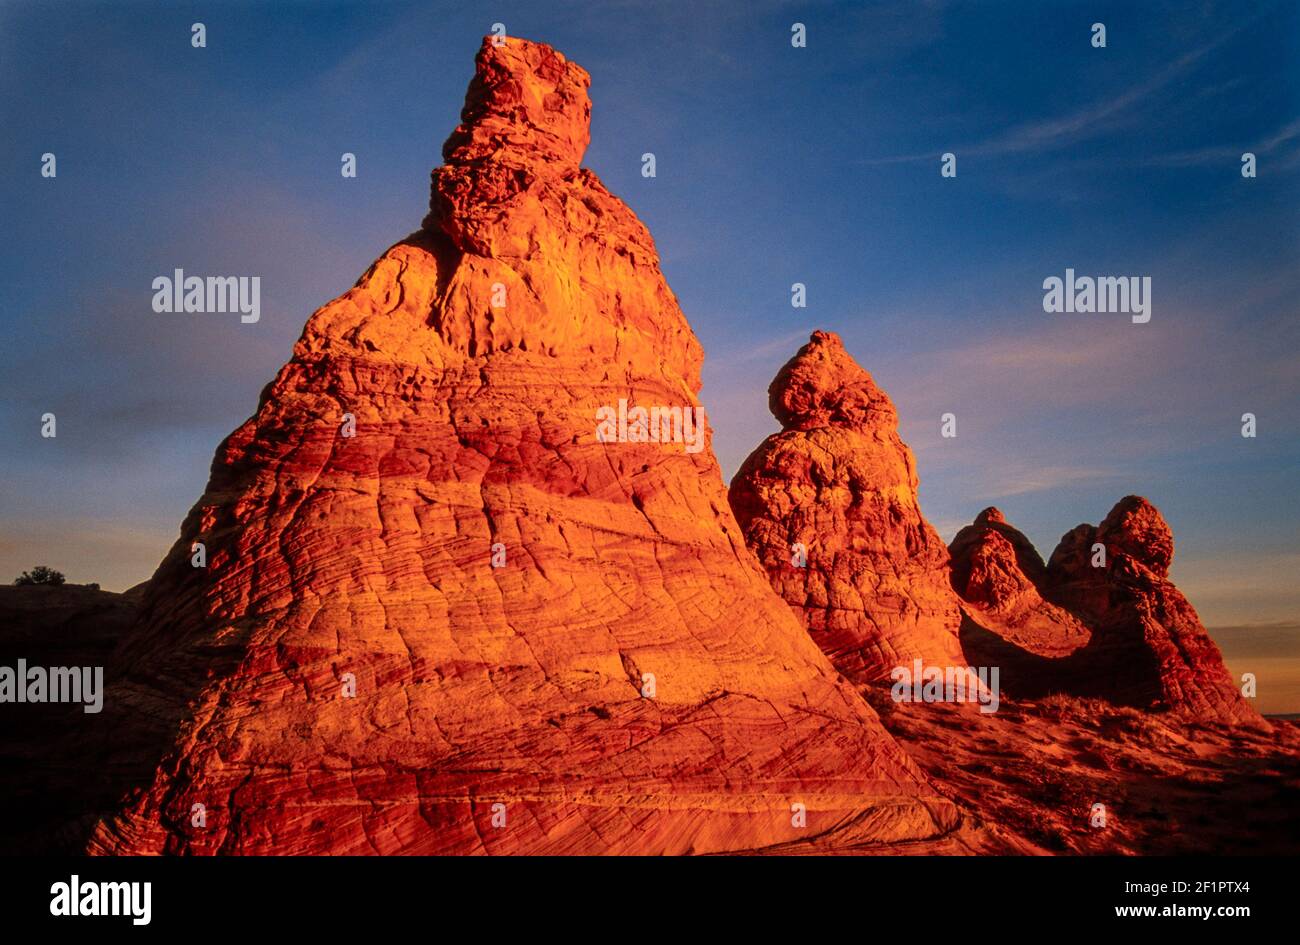 2002 Coyotte Buttes - queste sono formazioni rocciose di dune di sabbia pietrificate durante l'escursione all'alba della mattina presto all'onda. Queste formazioni si trovano sulle pendici dei Coyote Buttes nel Paria Canyon-Vermilion Cliffs Wilderness dell'altopiano del Colorado. Questi coni sferici di roccia dell'alveare sono composti da strati di sottili e delicati rilievi di arenaria. Foto Stock